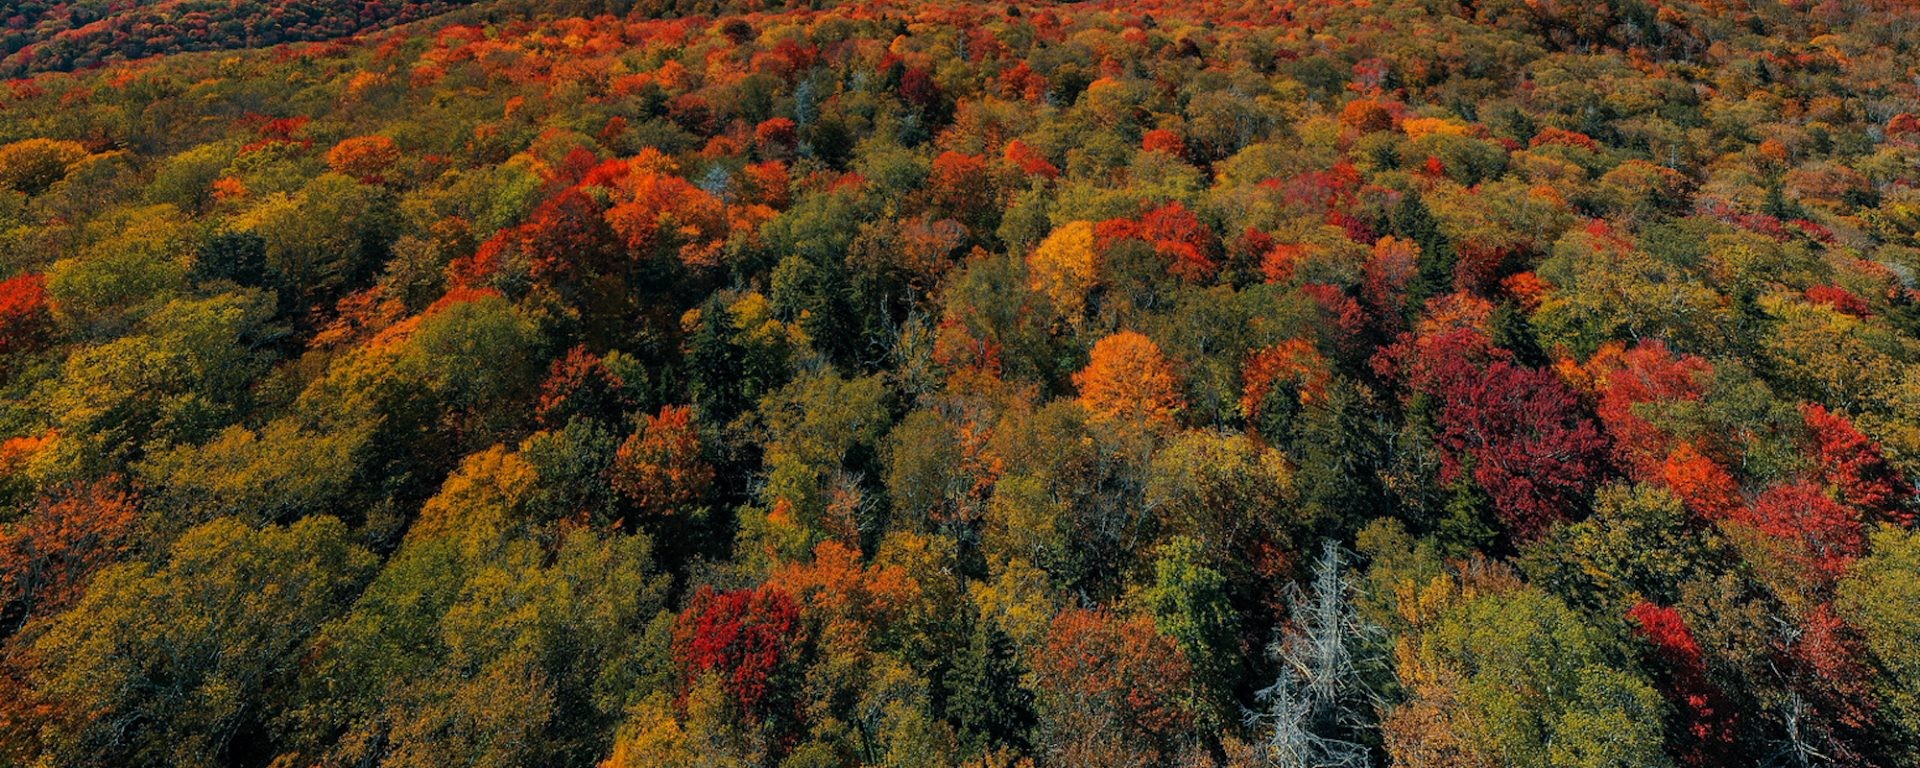 Fall Foliage Road Trip:Percorsi W.Va. 15 est e 20 nord 